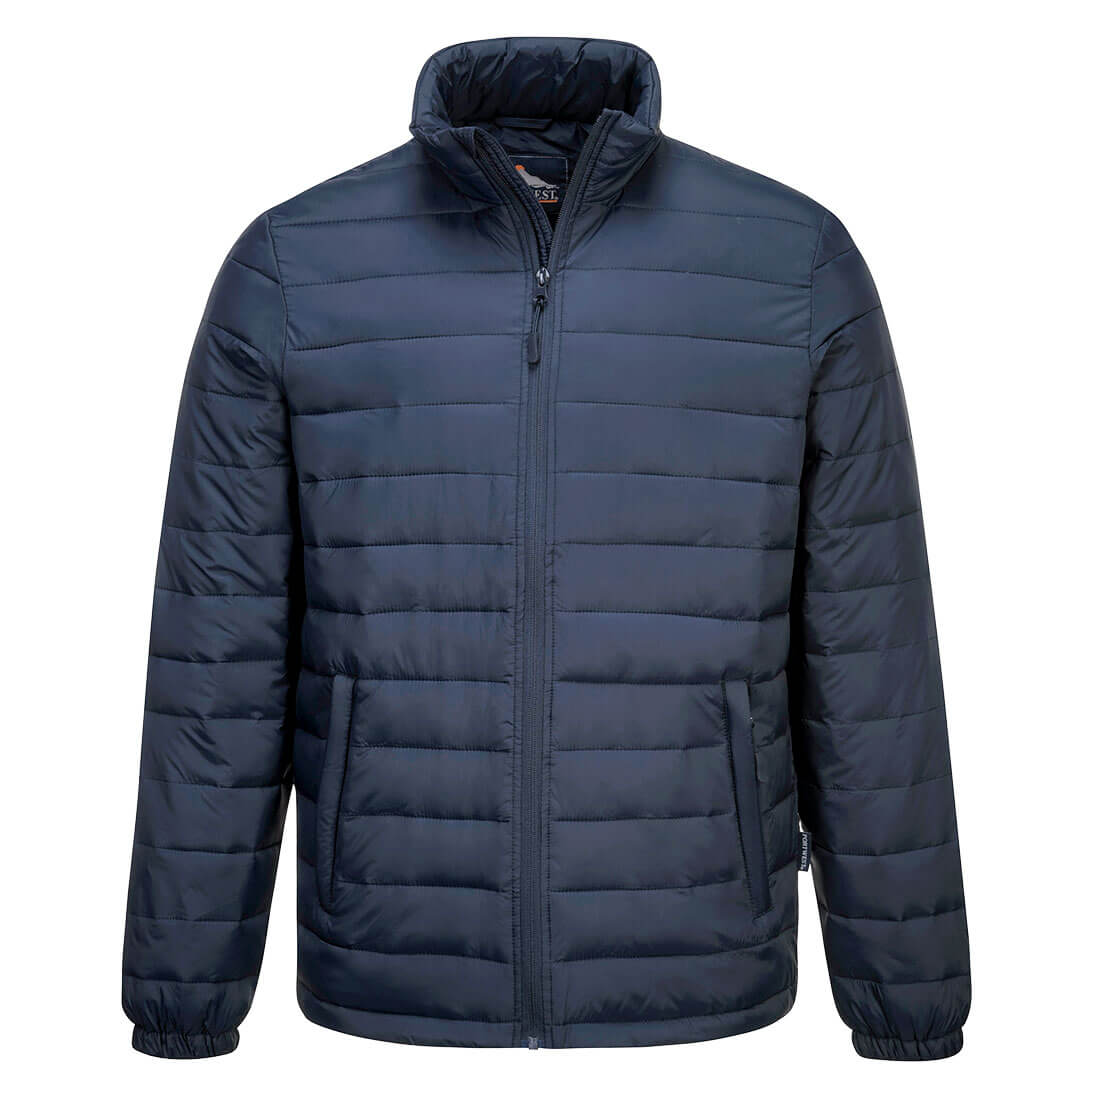 S543 - Männer Aspen Baffle Jacket